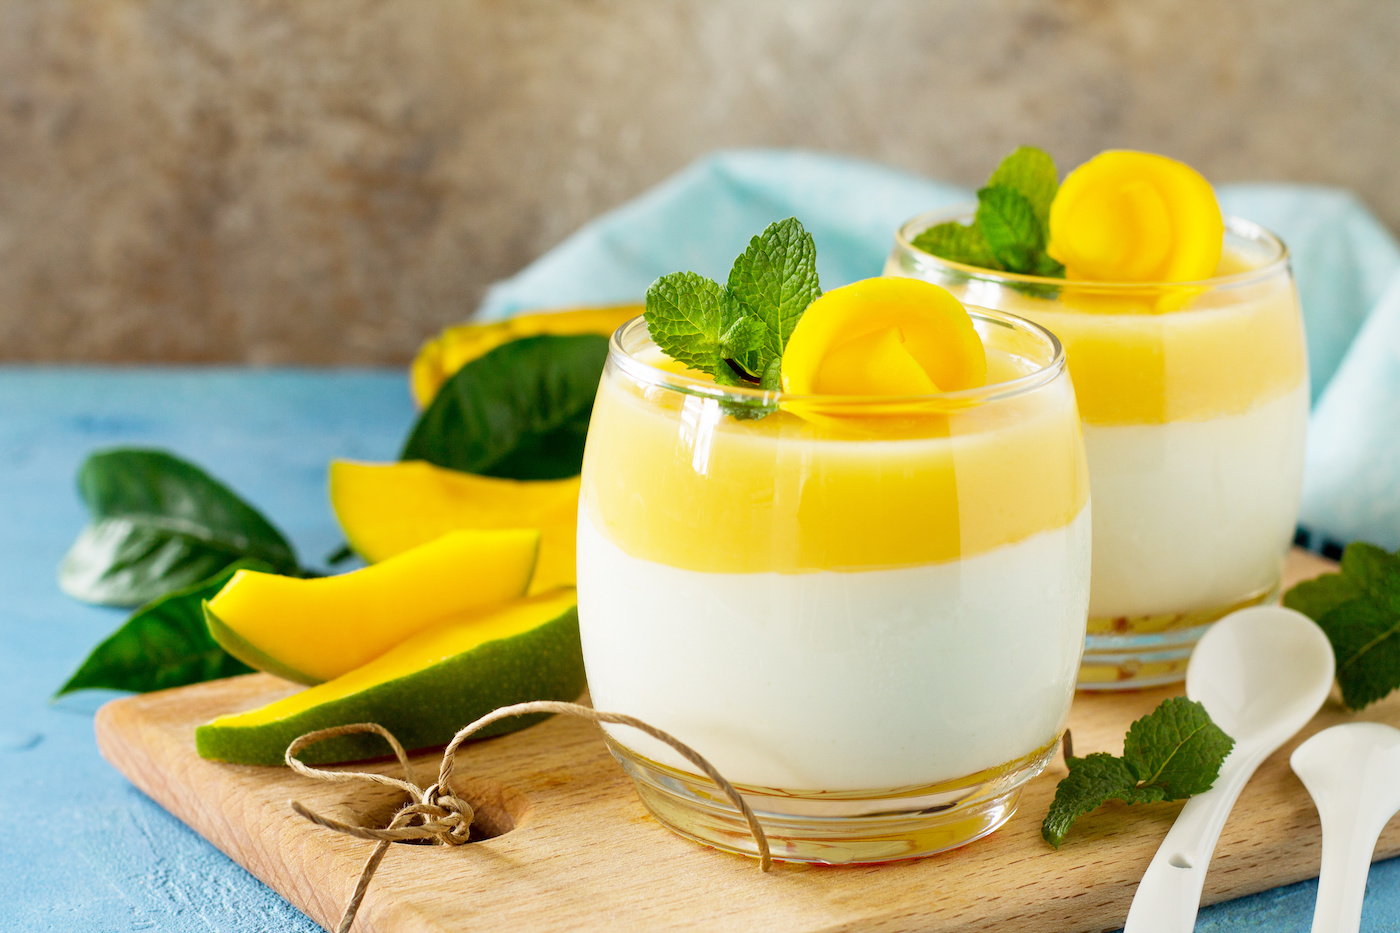 Kochen mit exotischen Früchten: Mango-Creme ein köstliches Dessert